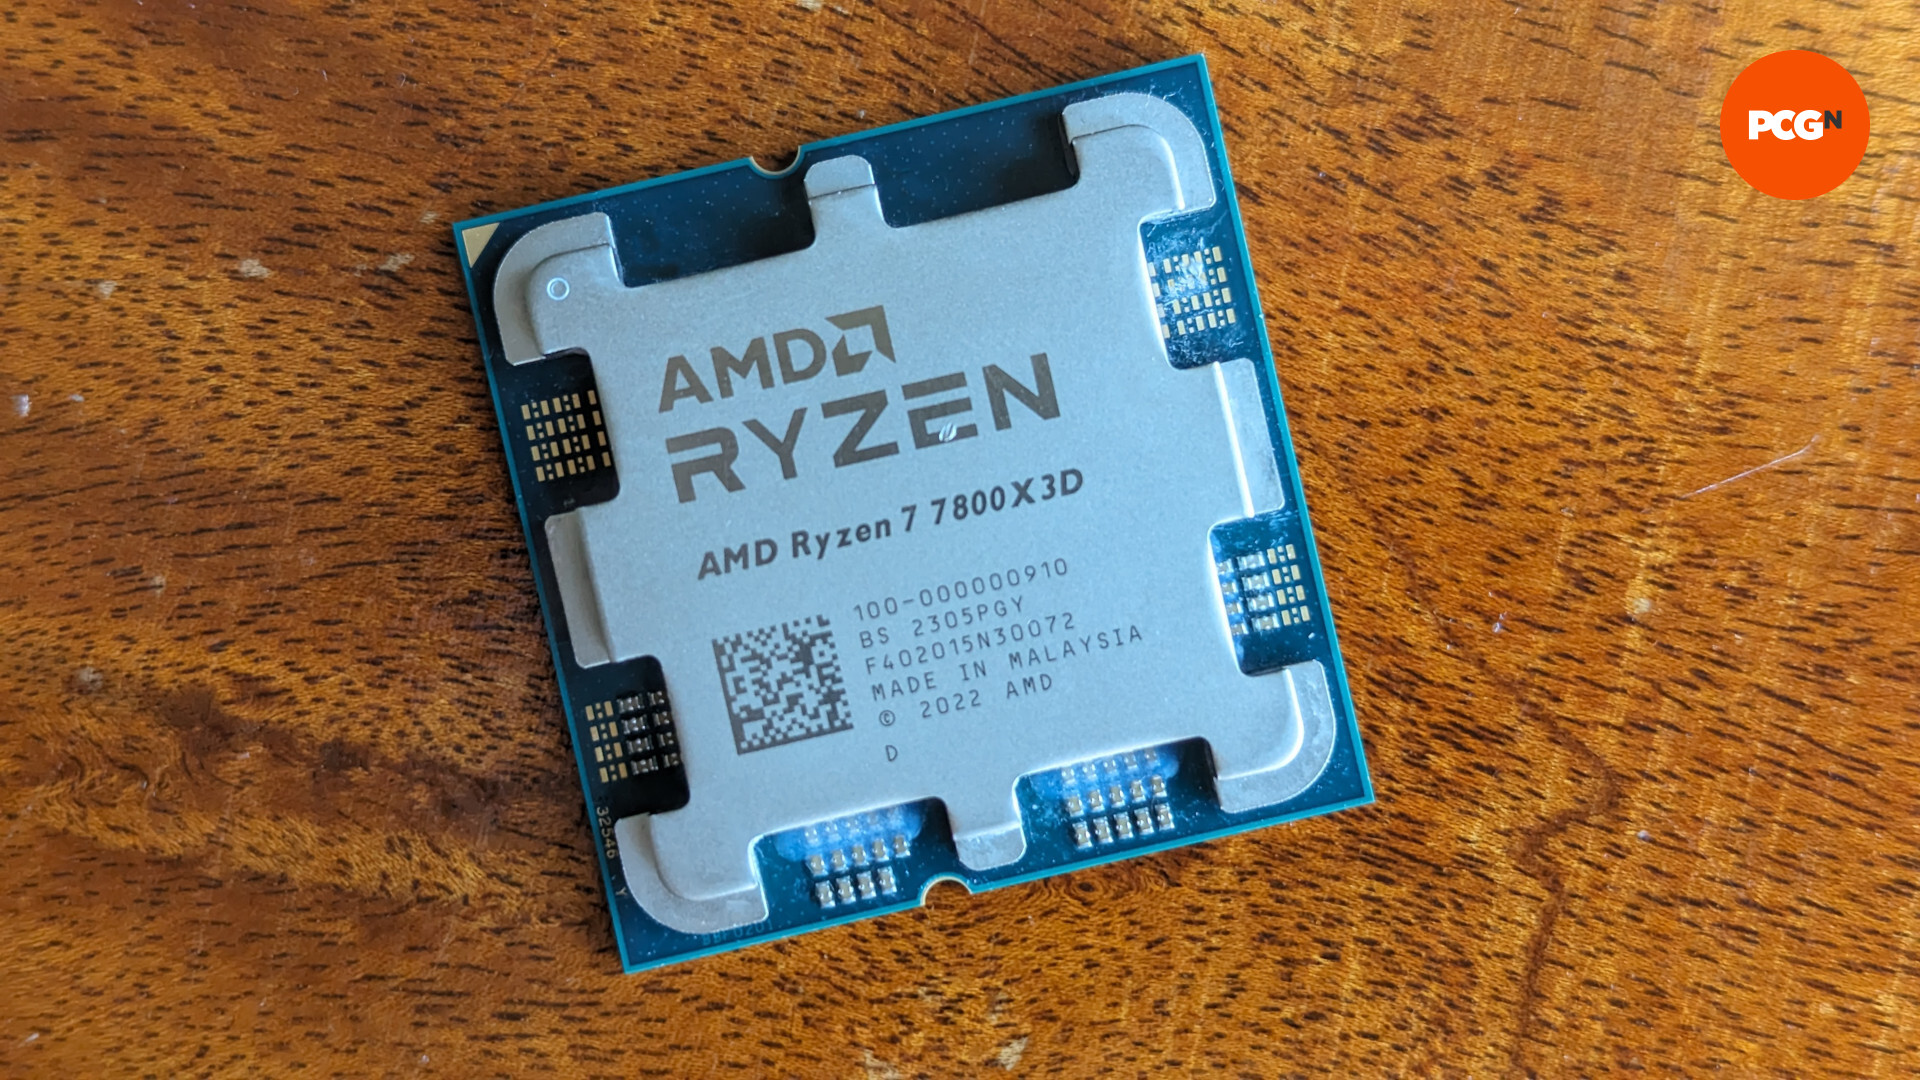 Test de l'AMD Ryzen 7 7800X3D : le processeur repose sur une surface en bois